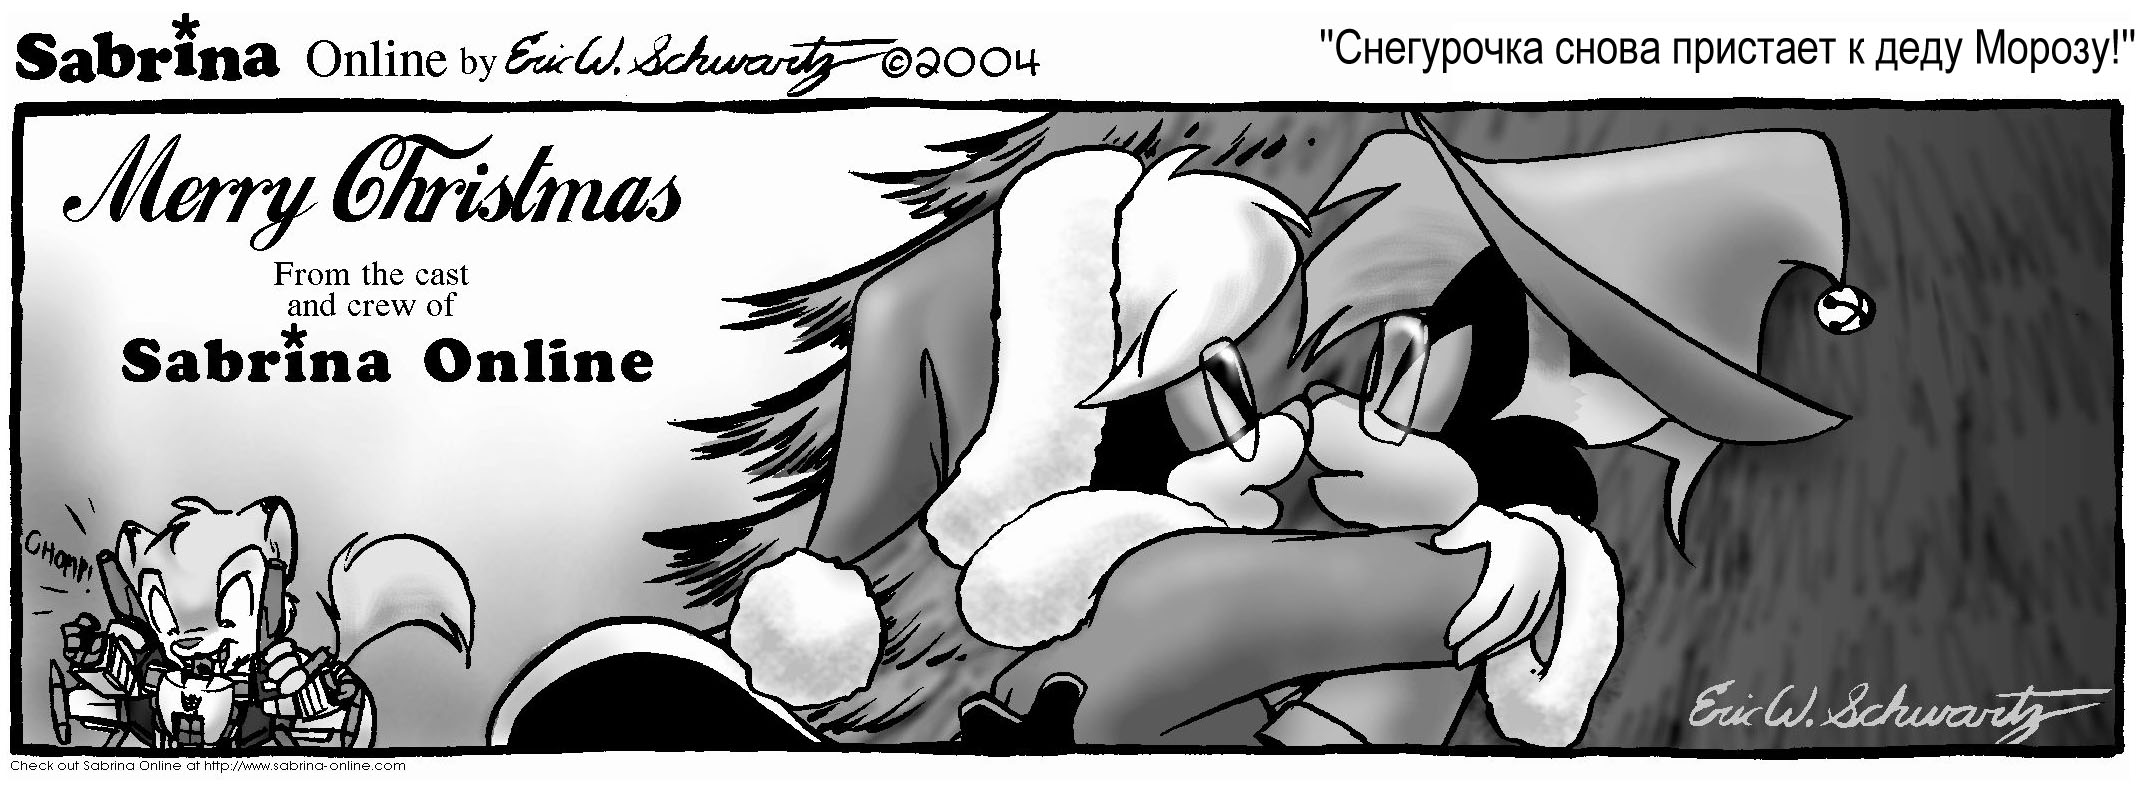 Рождественский стрип 2004